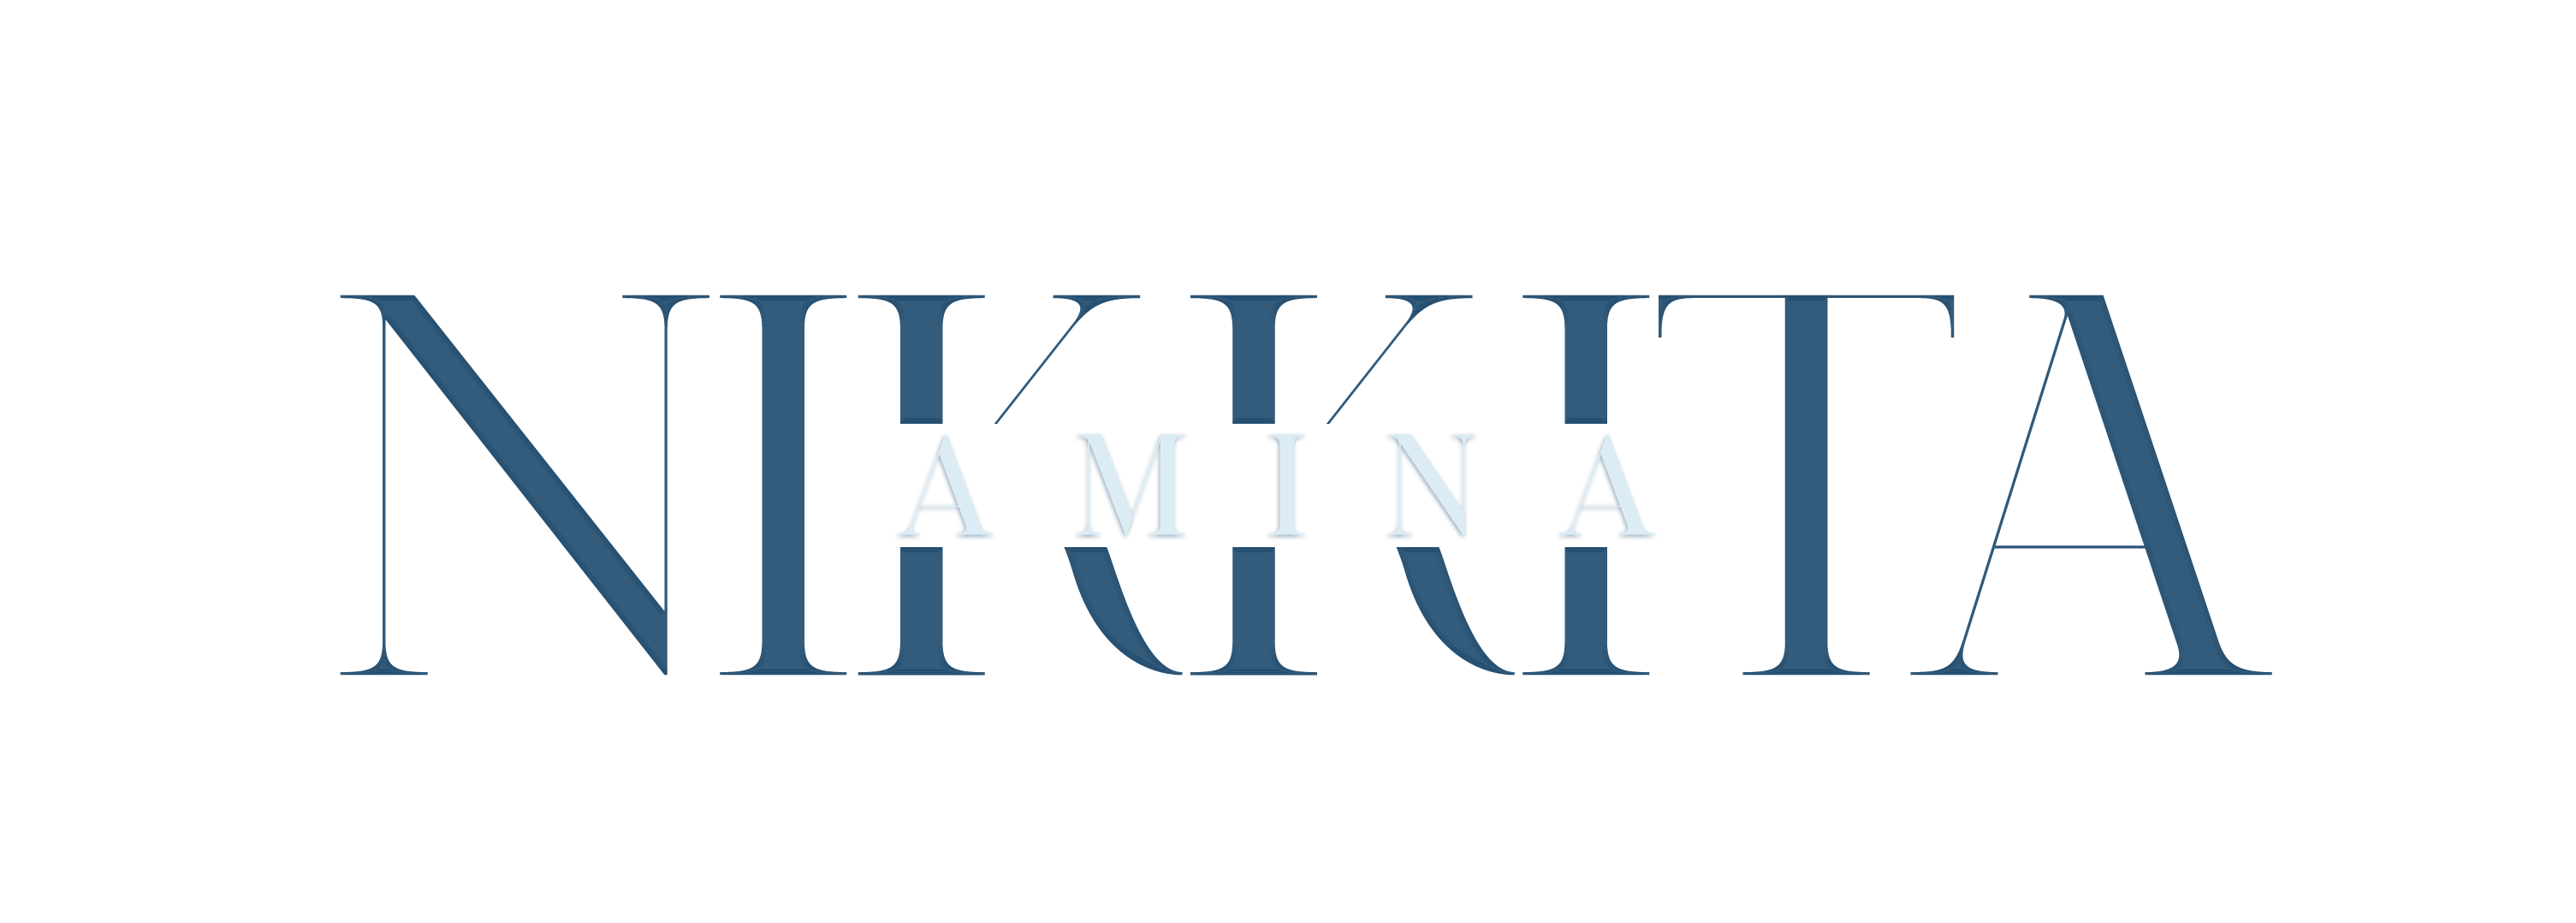 NikkitaAmina